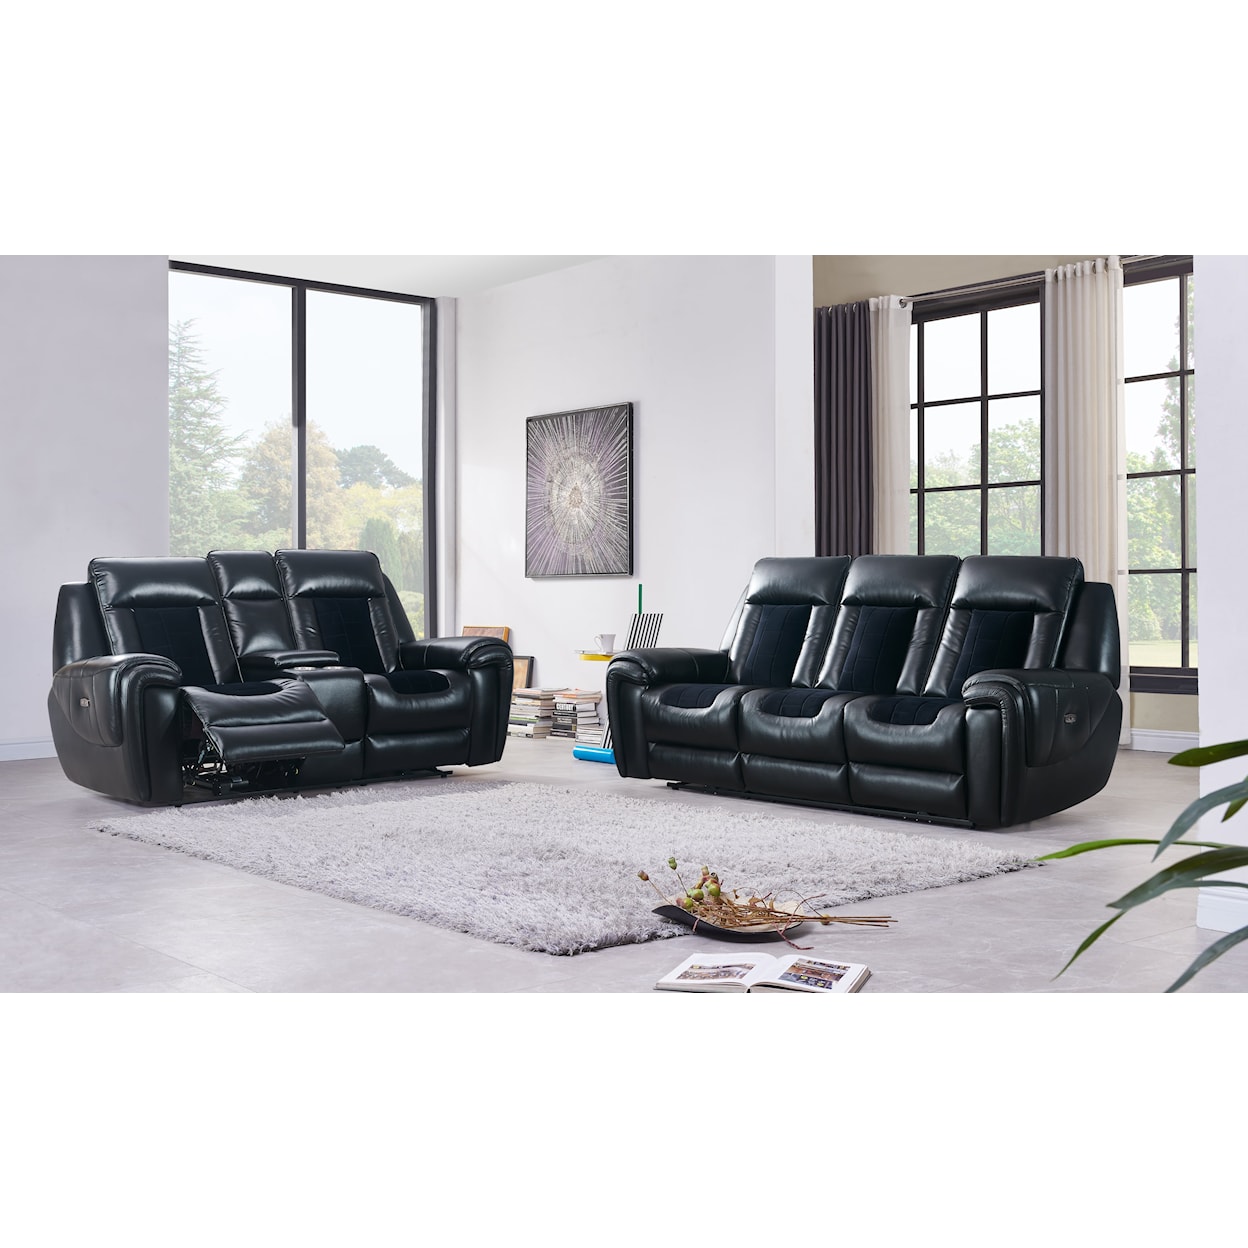 Global Furniture U0700 W/ Led Reclining Sofa